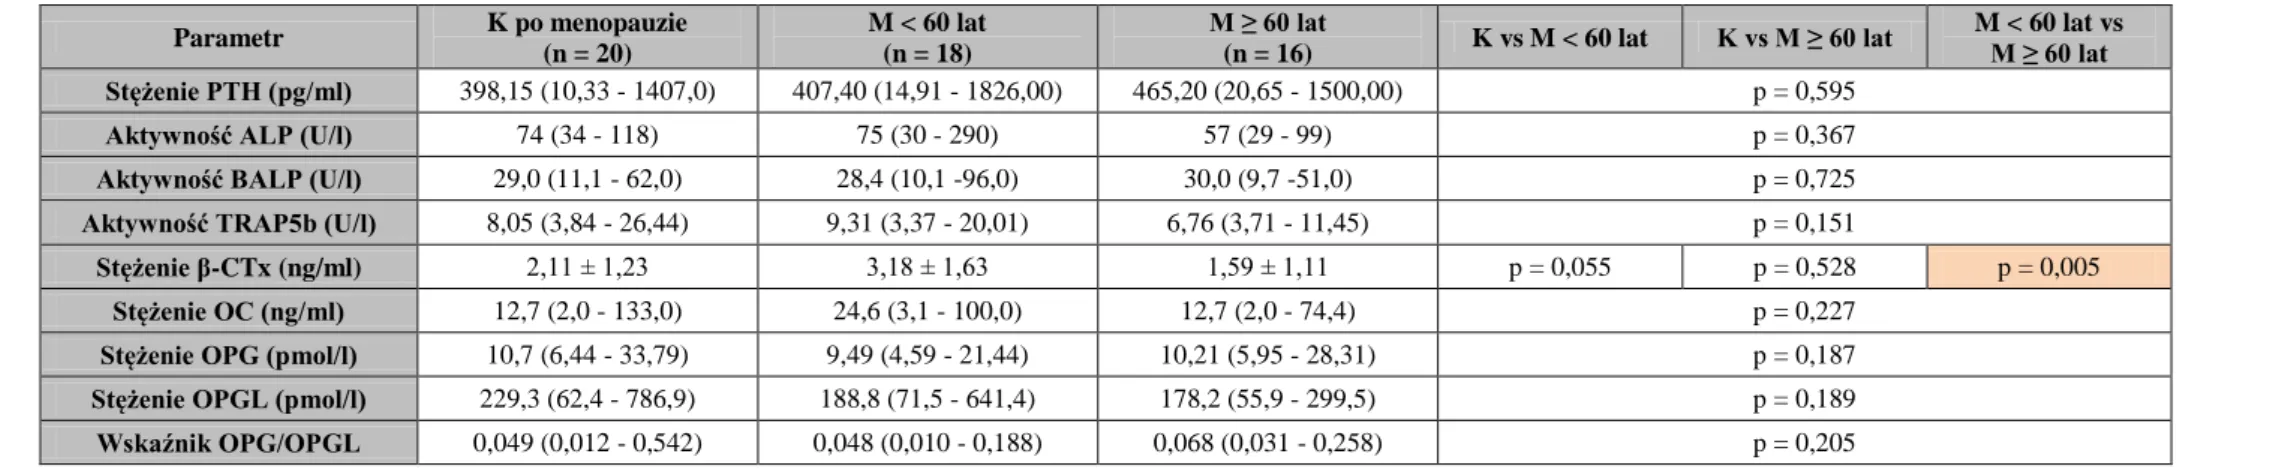 Tabela IV. Wyniki oznaczeń i porównania markerów metabolizmu kostnego u leczonych powtarzaną hemodializą kobiet po menopauzie i podzielonych pod  względem wieku mężczyzn 